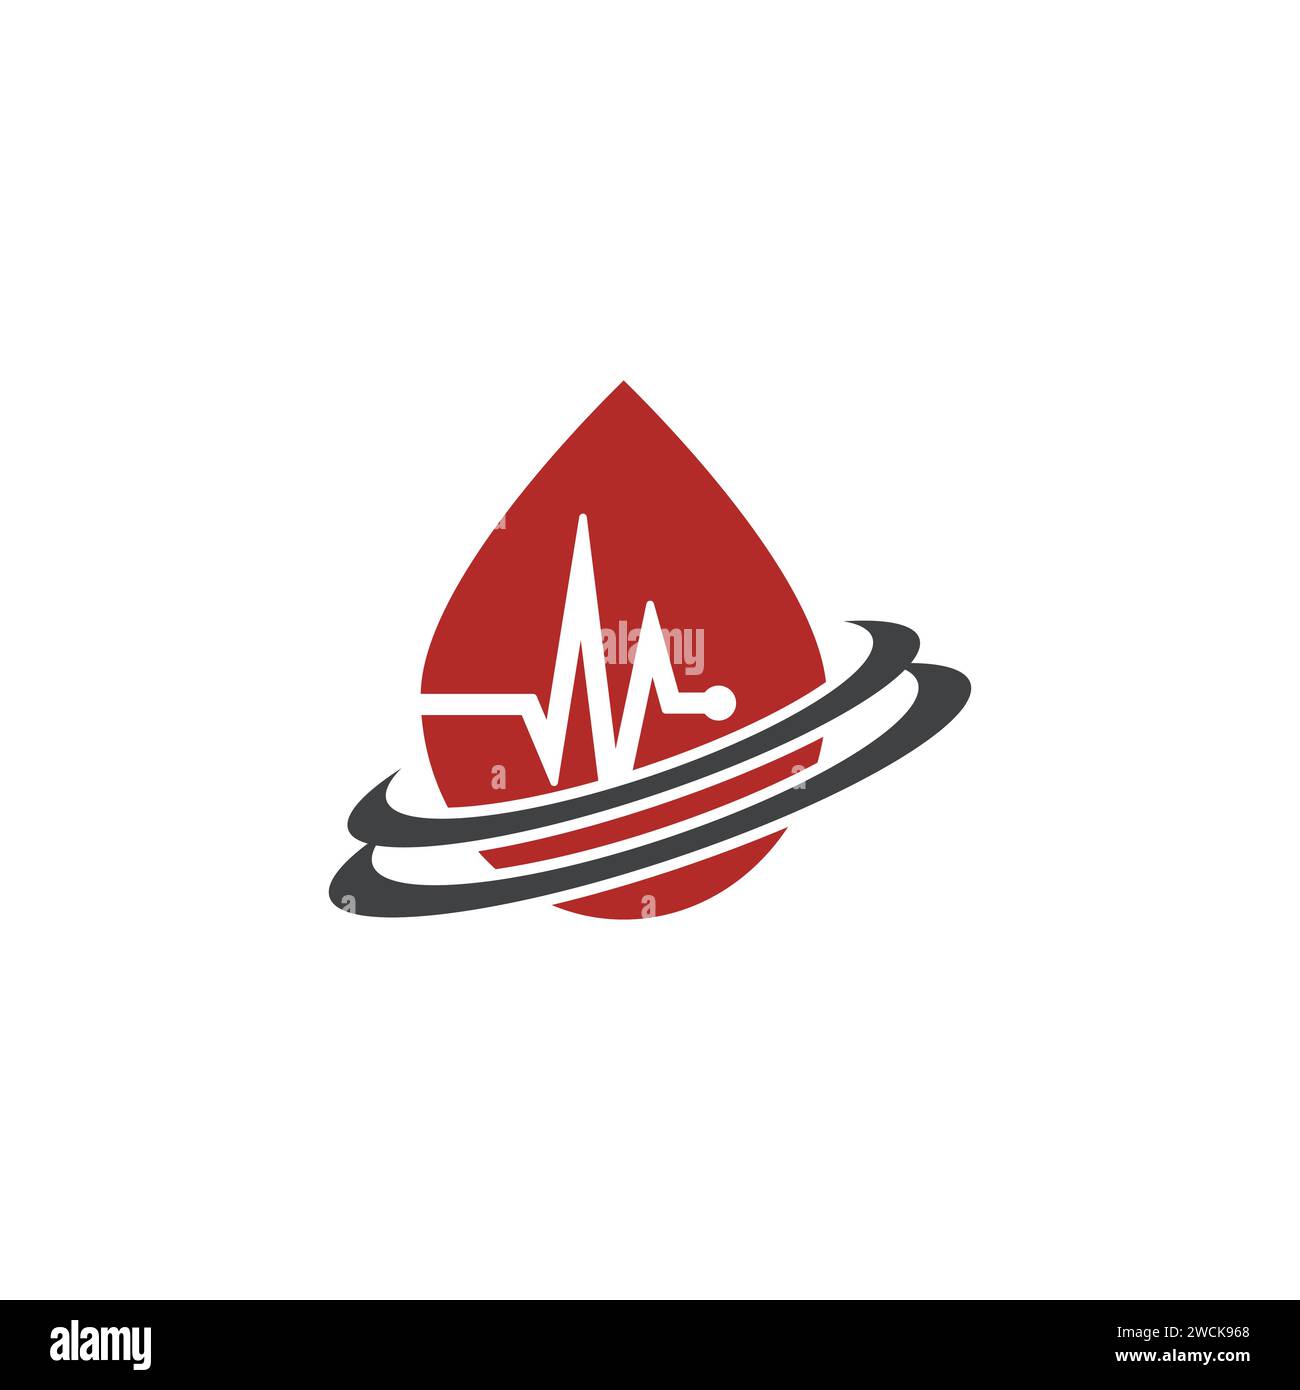 Modello di design del logo Blood Droop Icon. Logo per la donazione di sangue. Onda del polso e goccia di sangue rosso - concetto di donazione. Illustrazione vettoriale Illustrazione Vettoriale